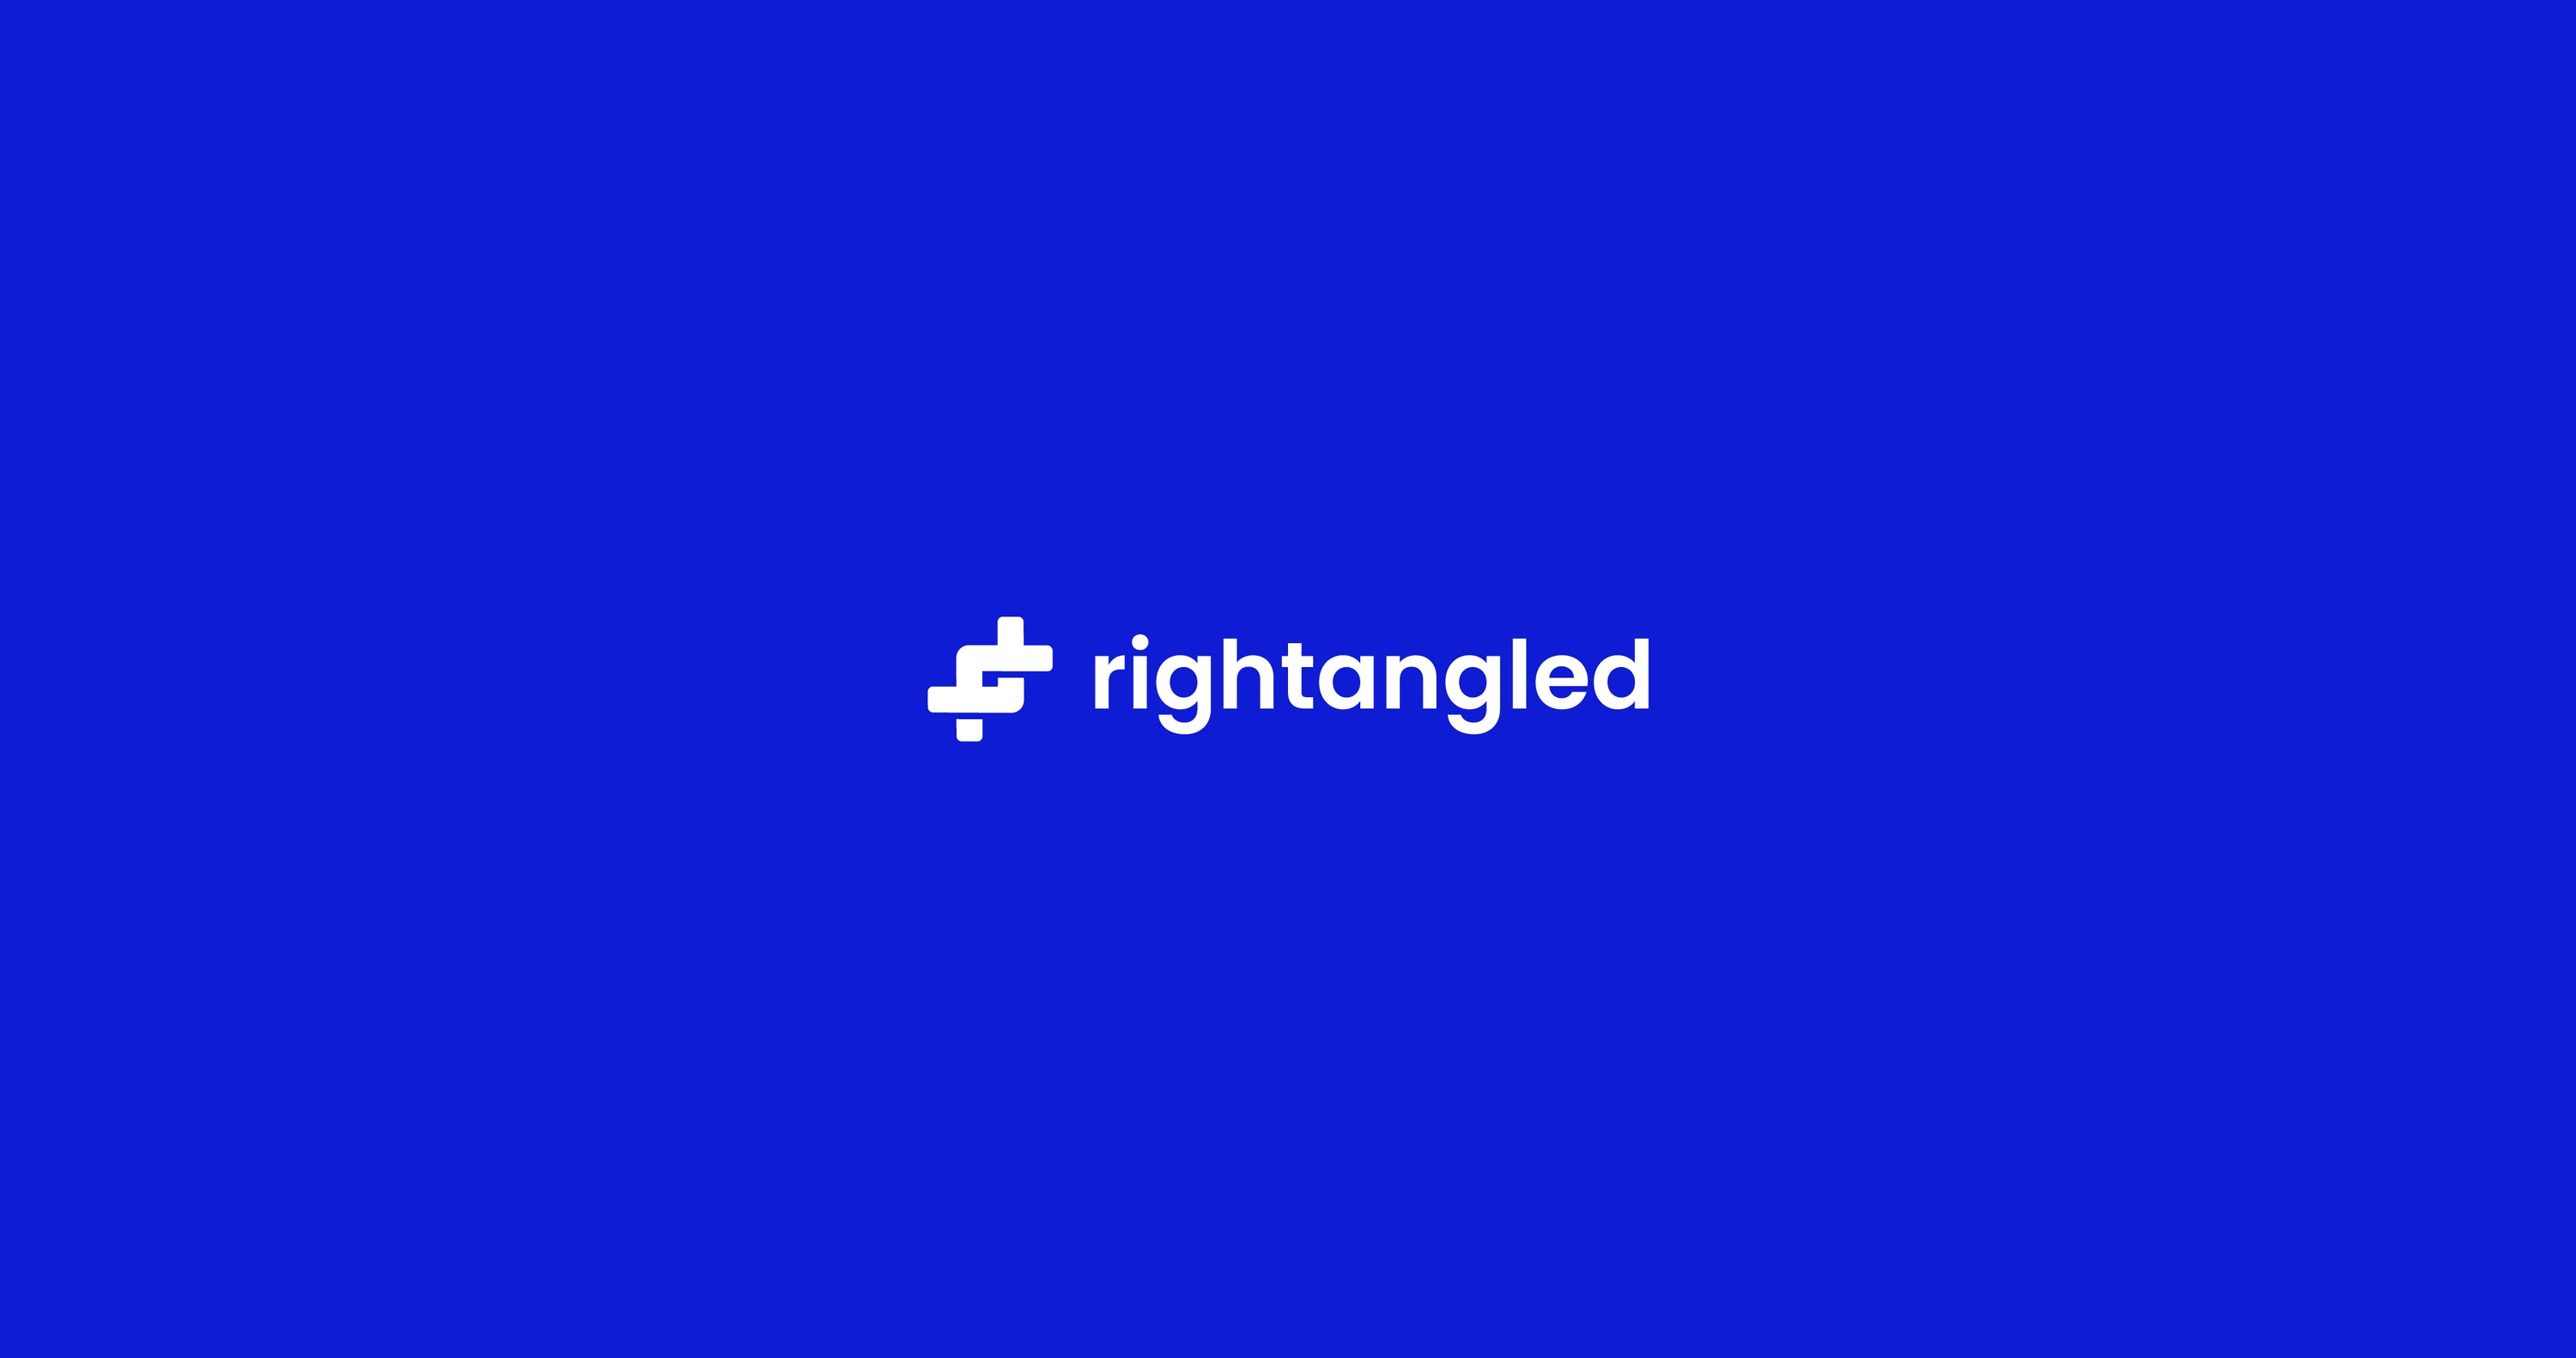 rightangled blue logo